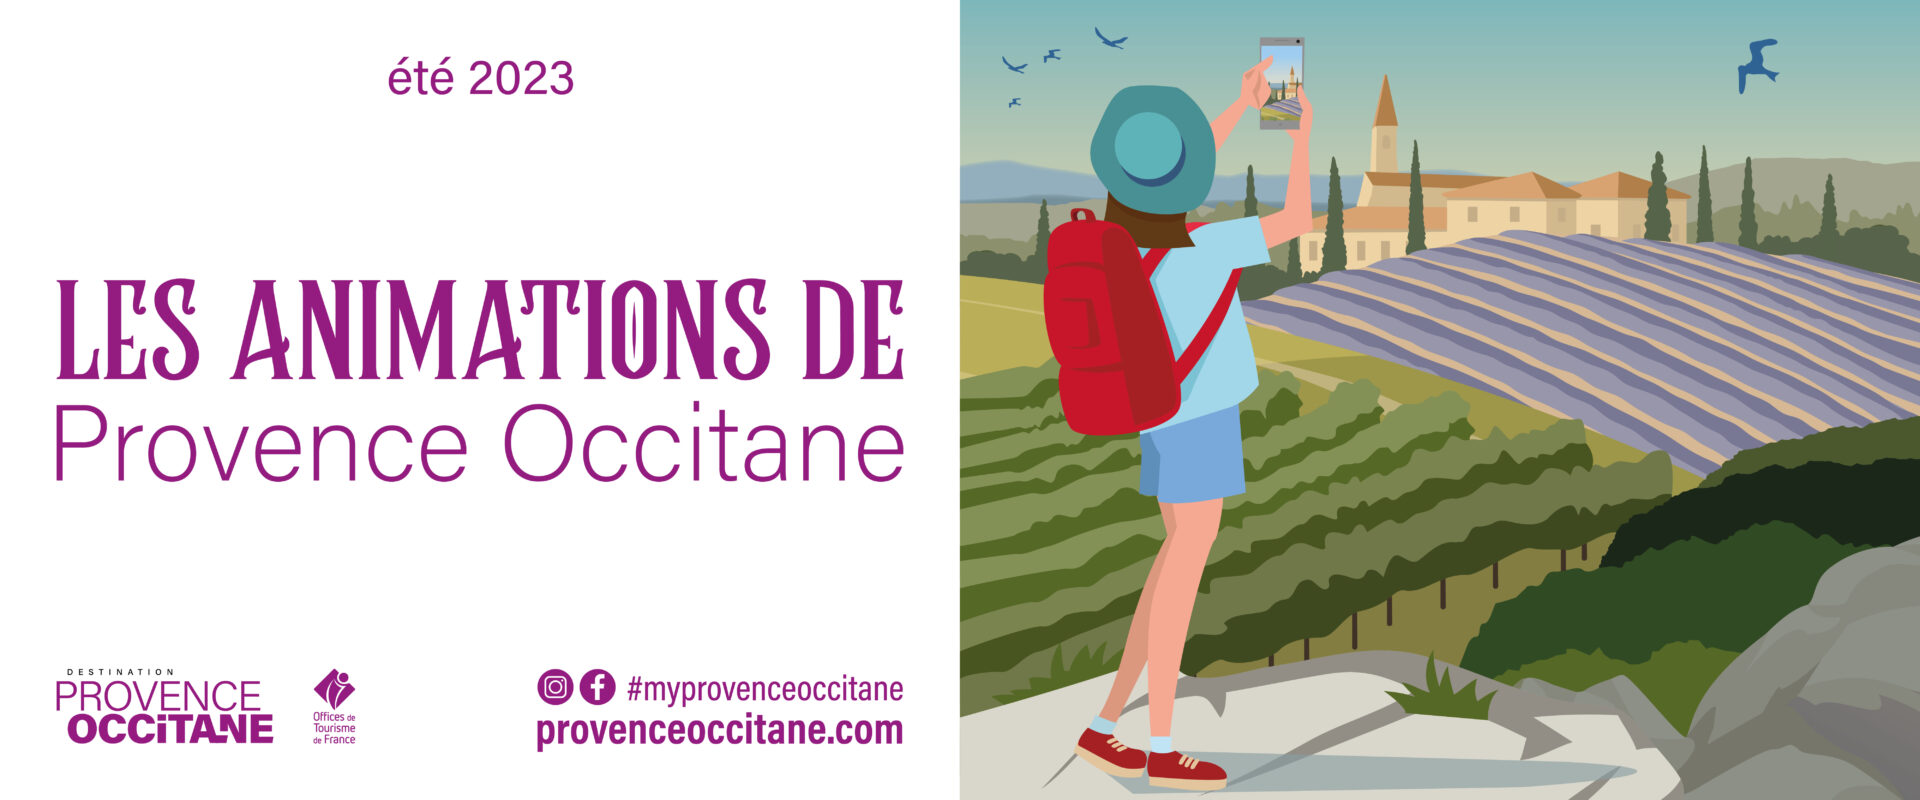 Les animations Provence Occitane du 24 au 28 juillet